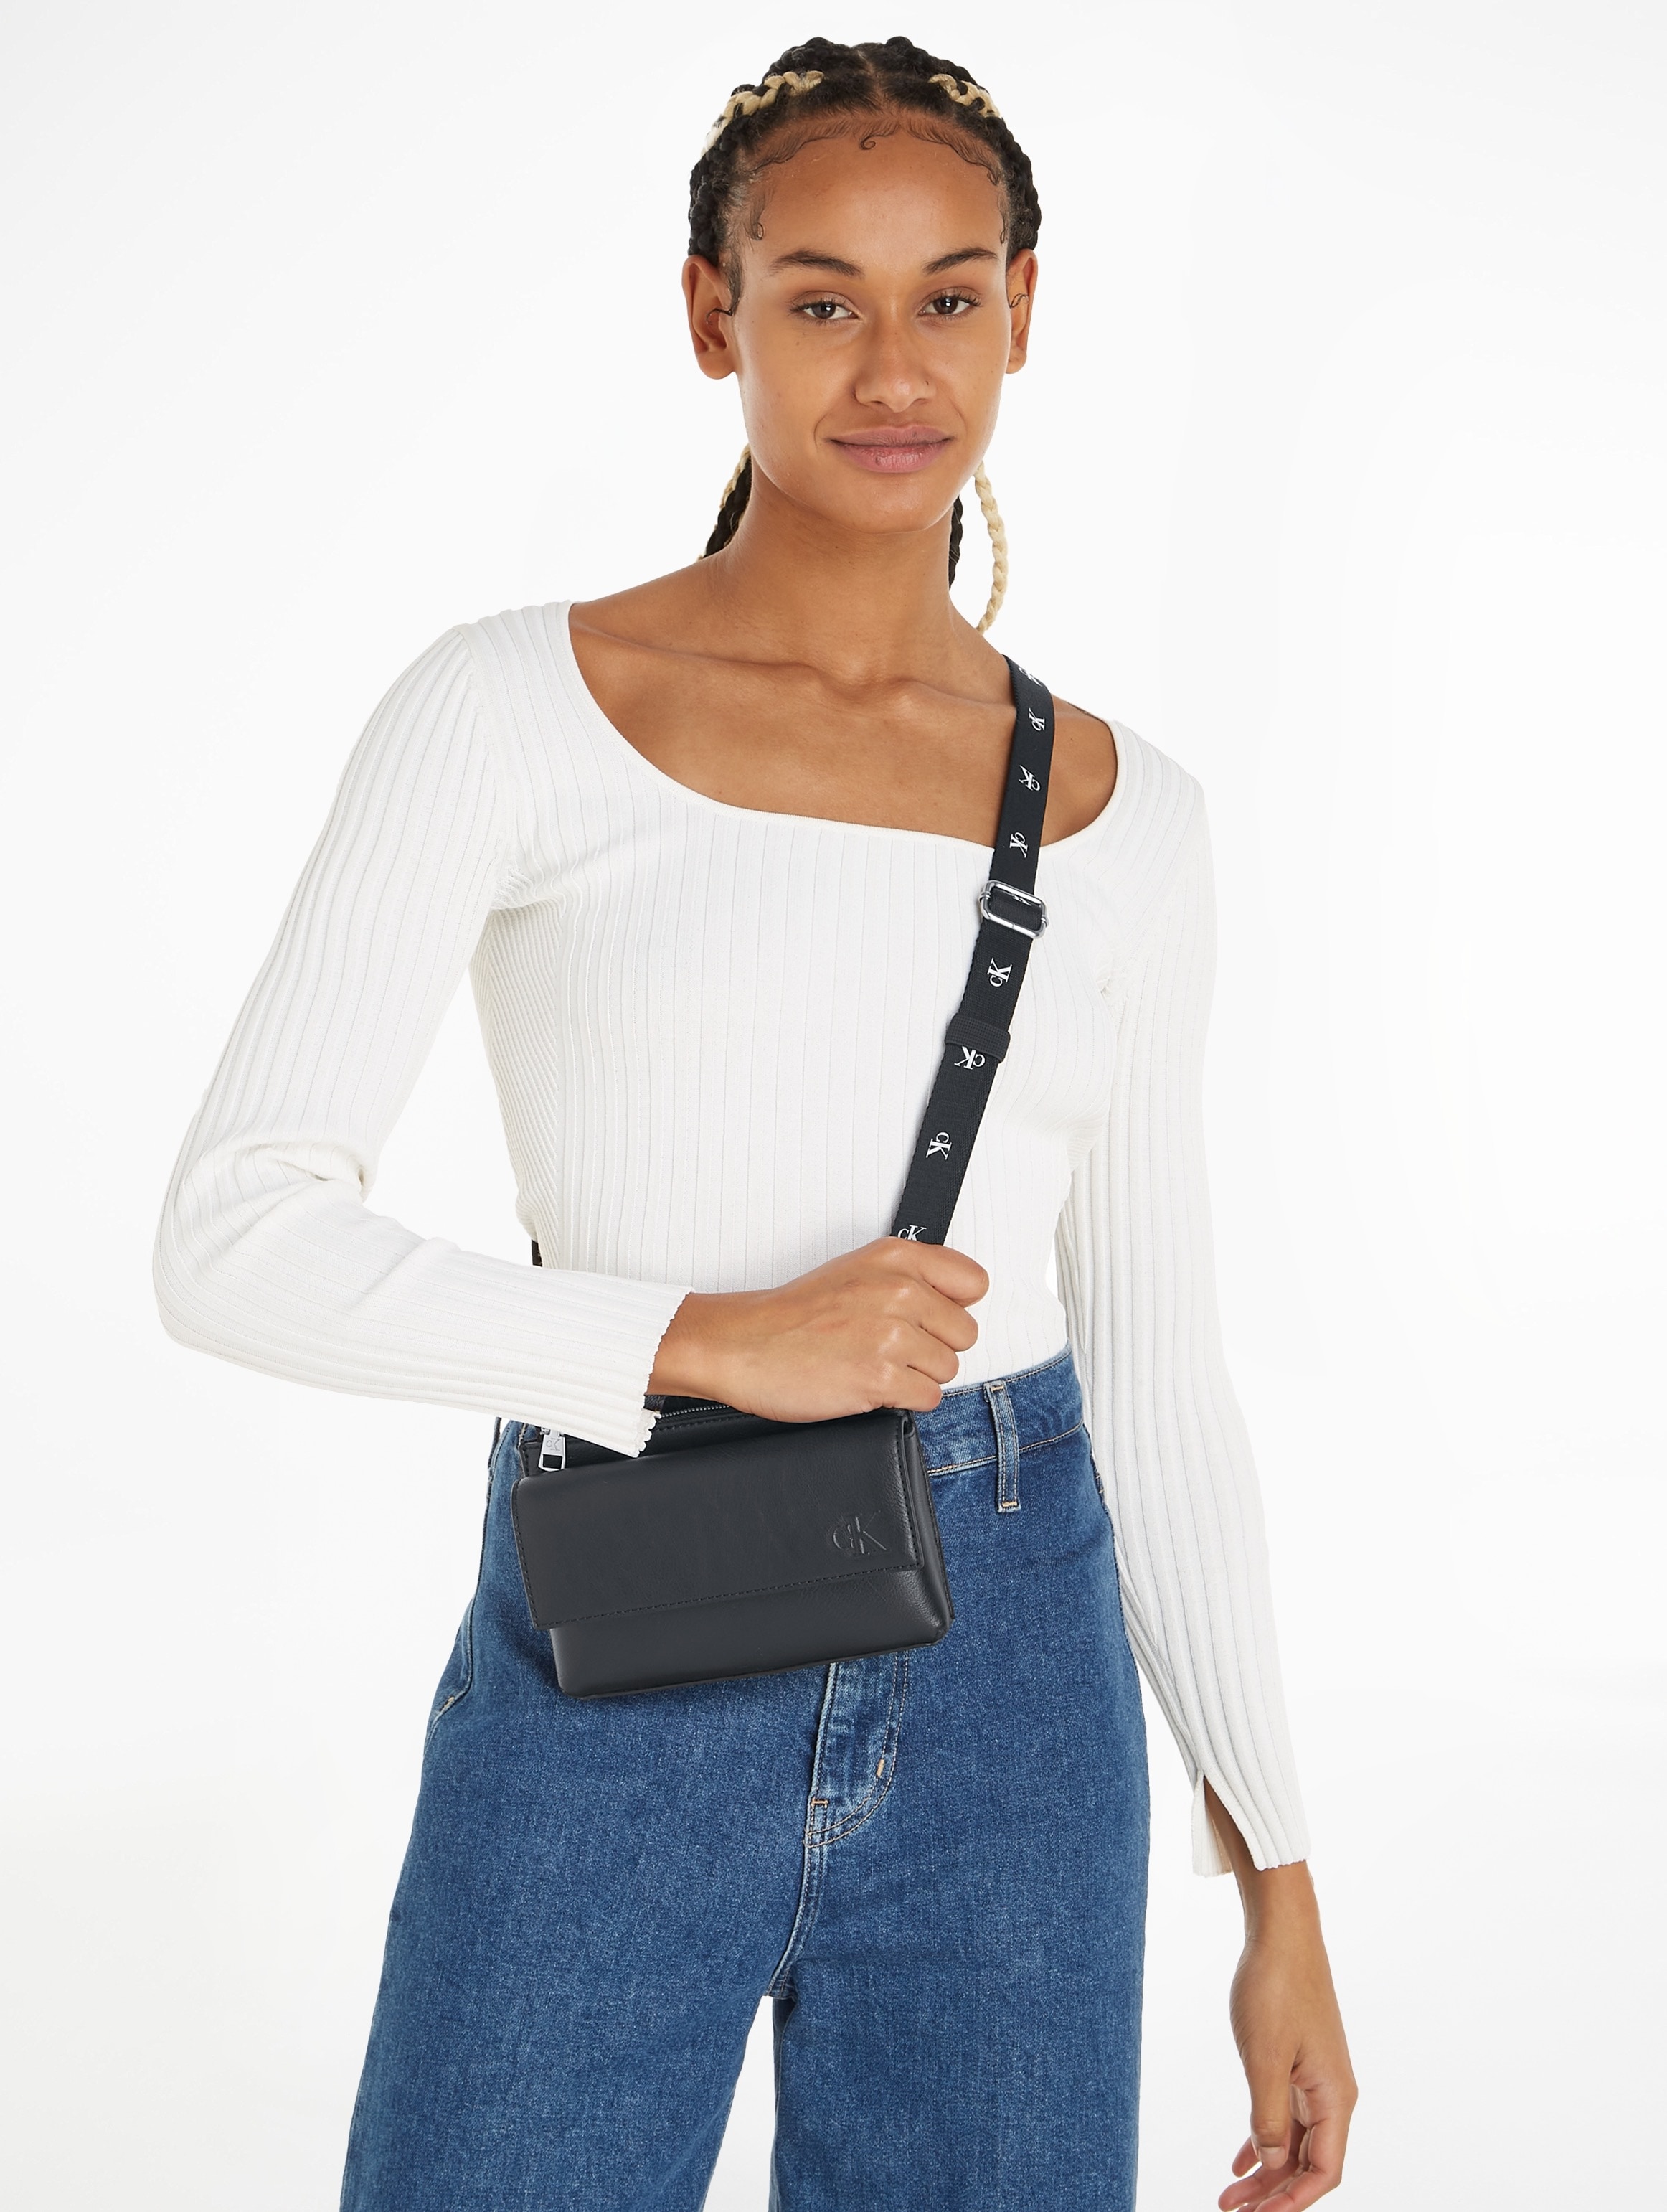 Markenlogo Jeans dezentem mit »ULTRALIGHT XBODY PHONE Klein EW online | PU«, BAUR Handytasche kaufen Calvin